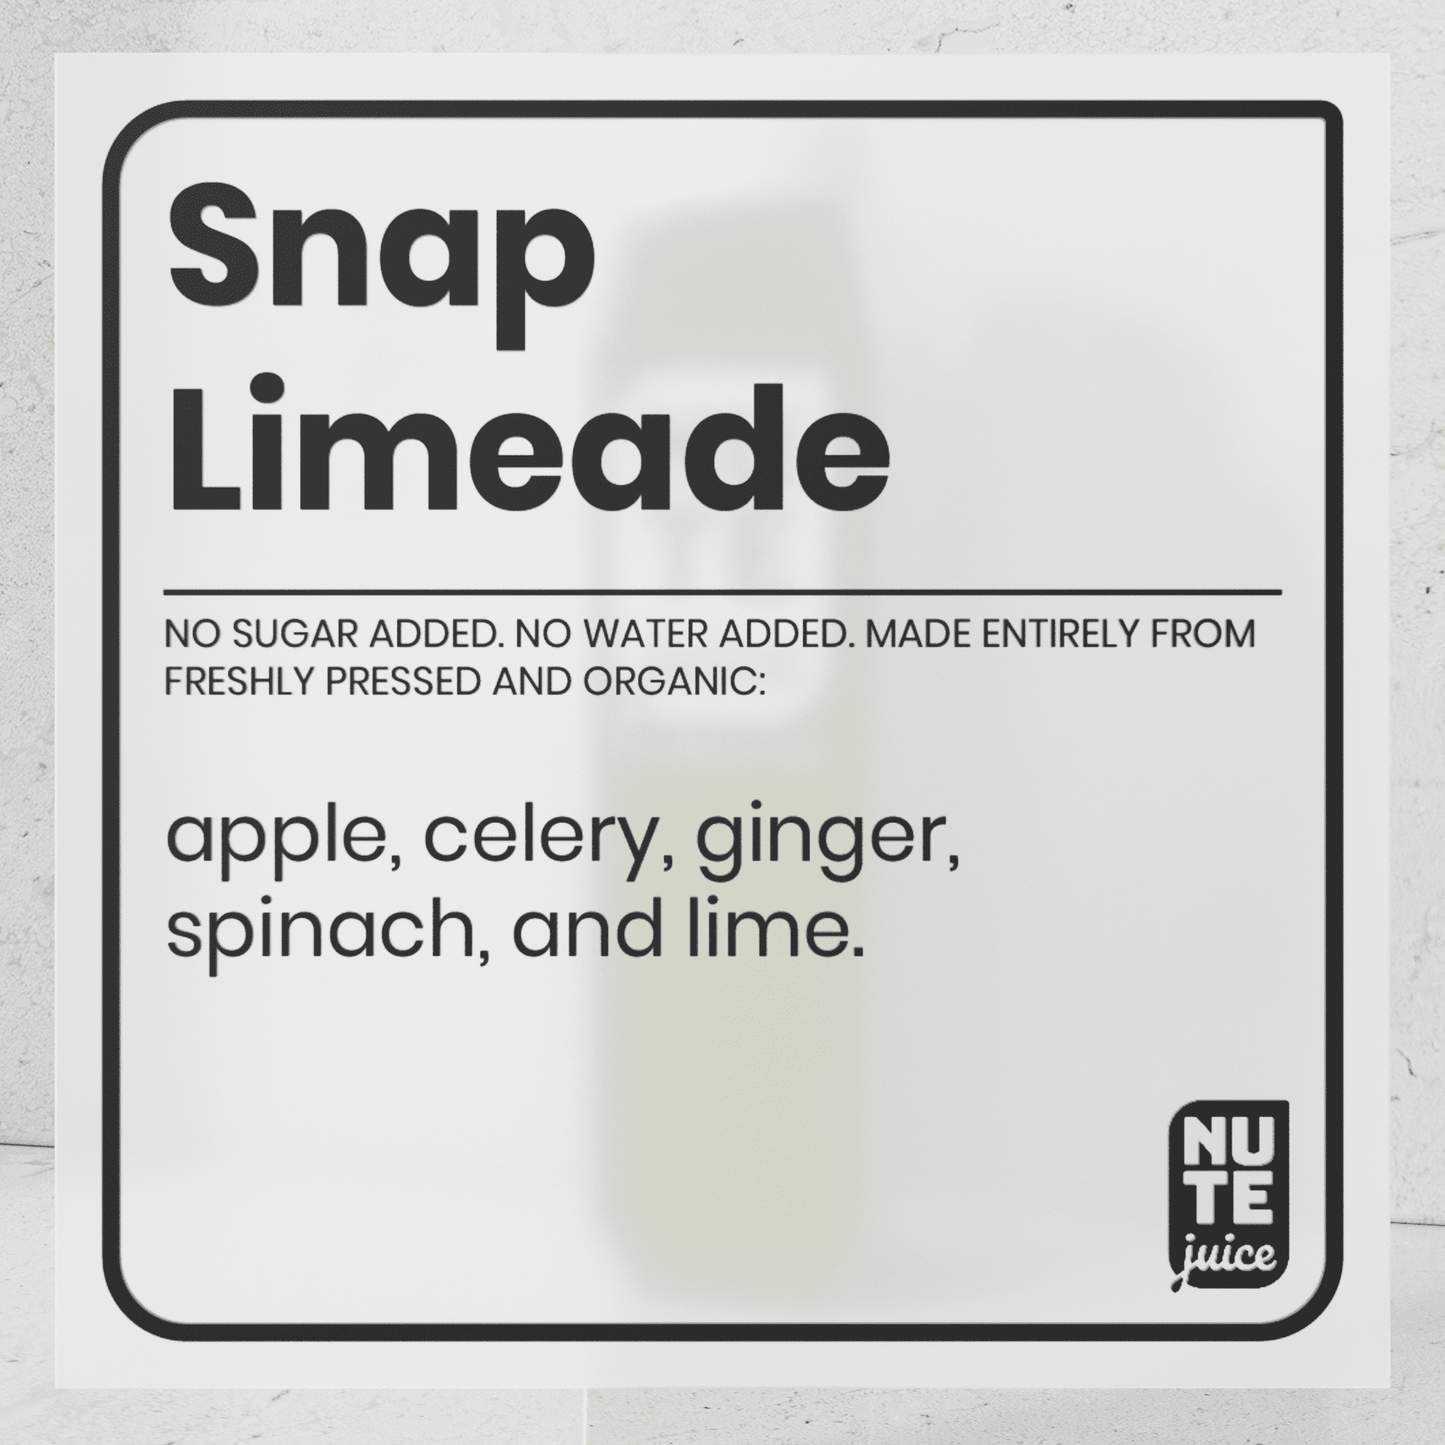 Snap Limeade